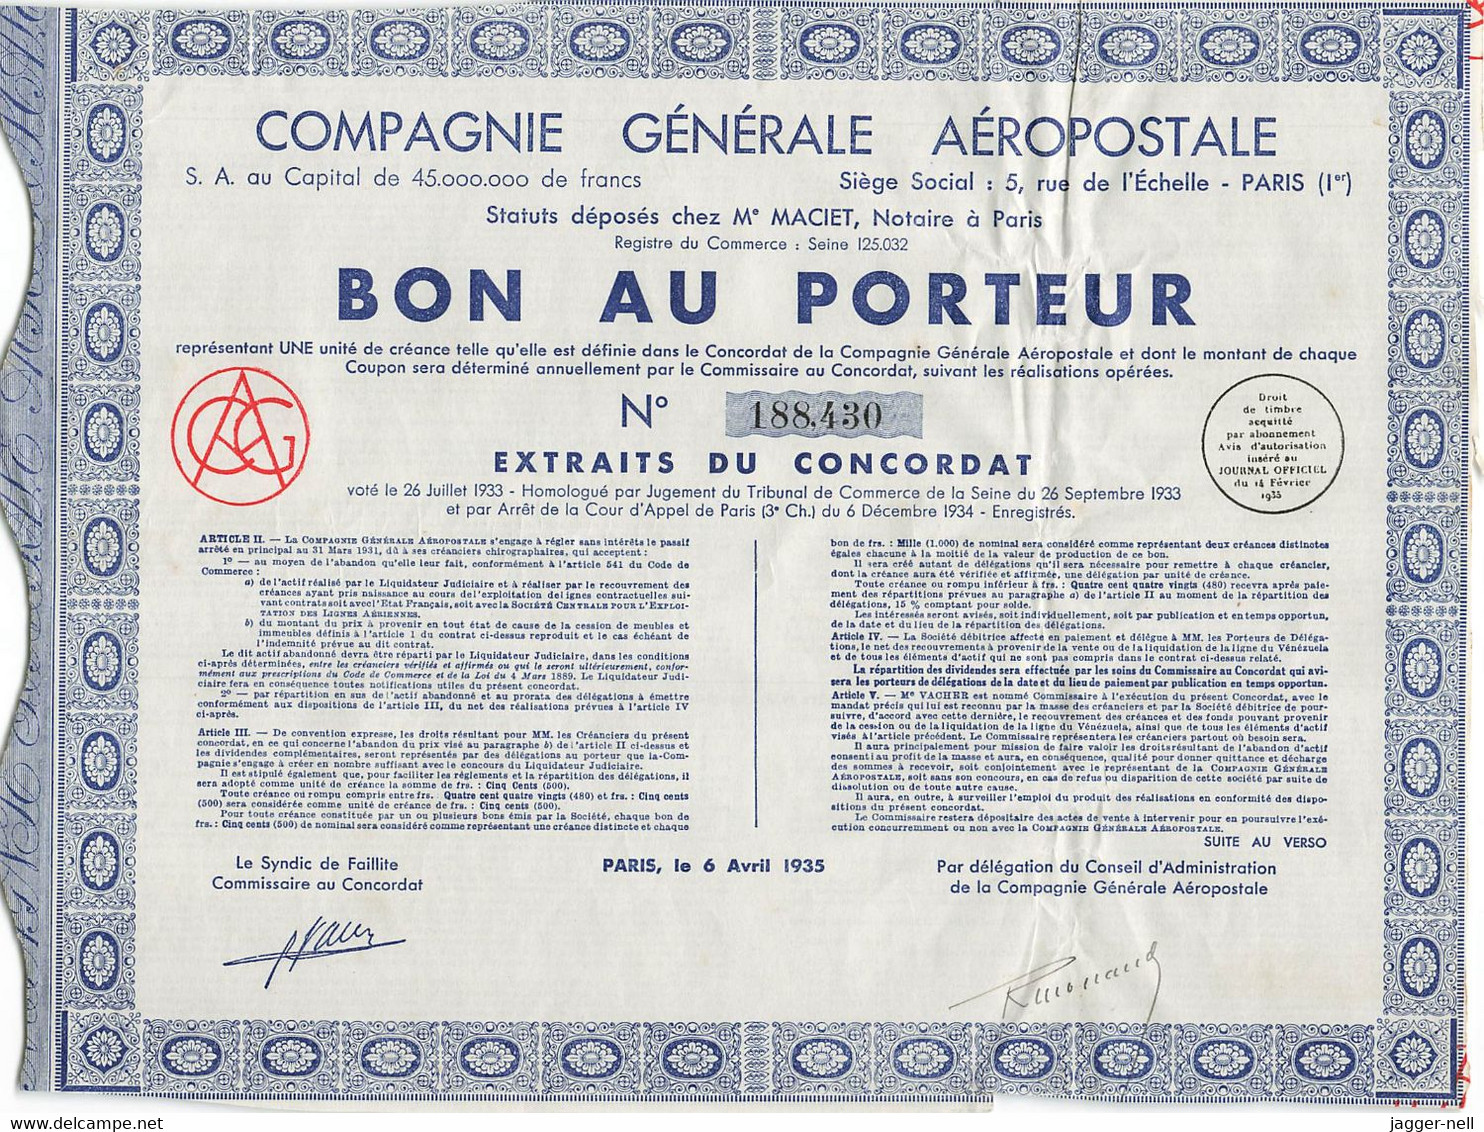 Superbe Lot de 40 "Bon au Porteur" Compagnie Générale Aéropostale - Aviation - 6 Avril 1935 - N°188 410 à 188 530 -